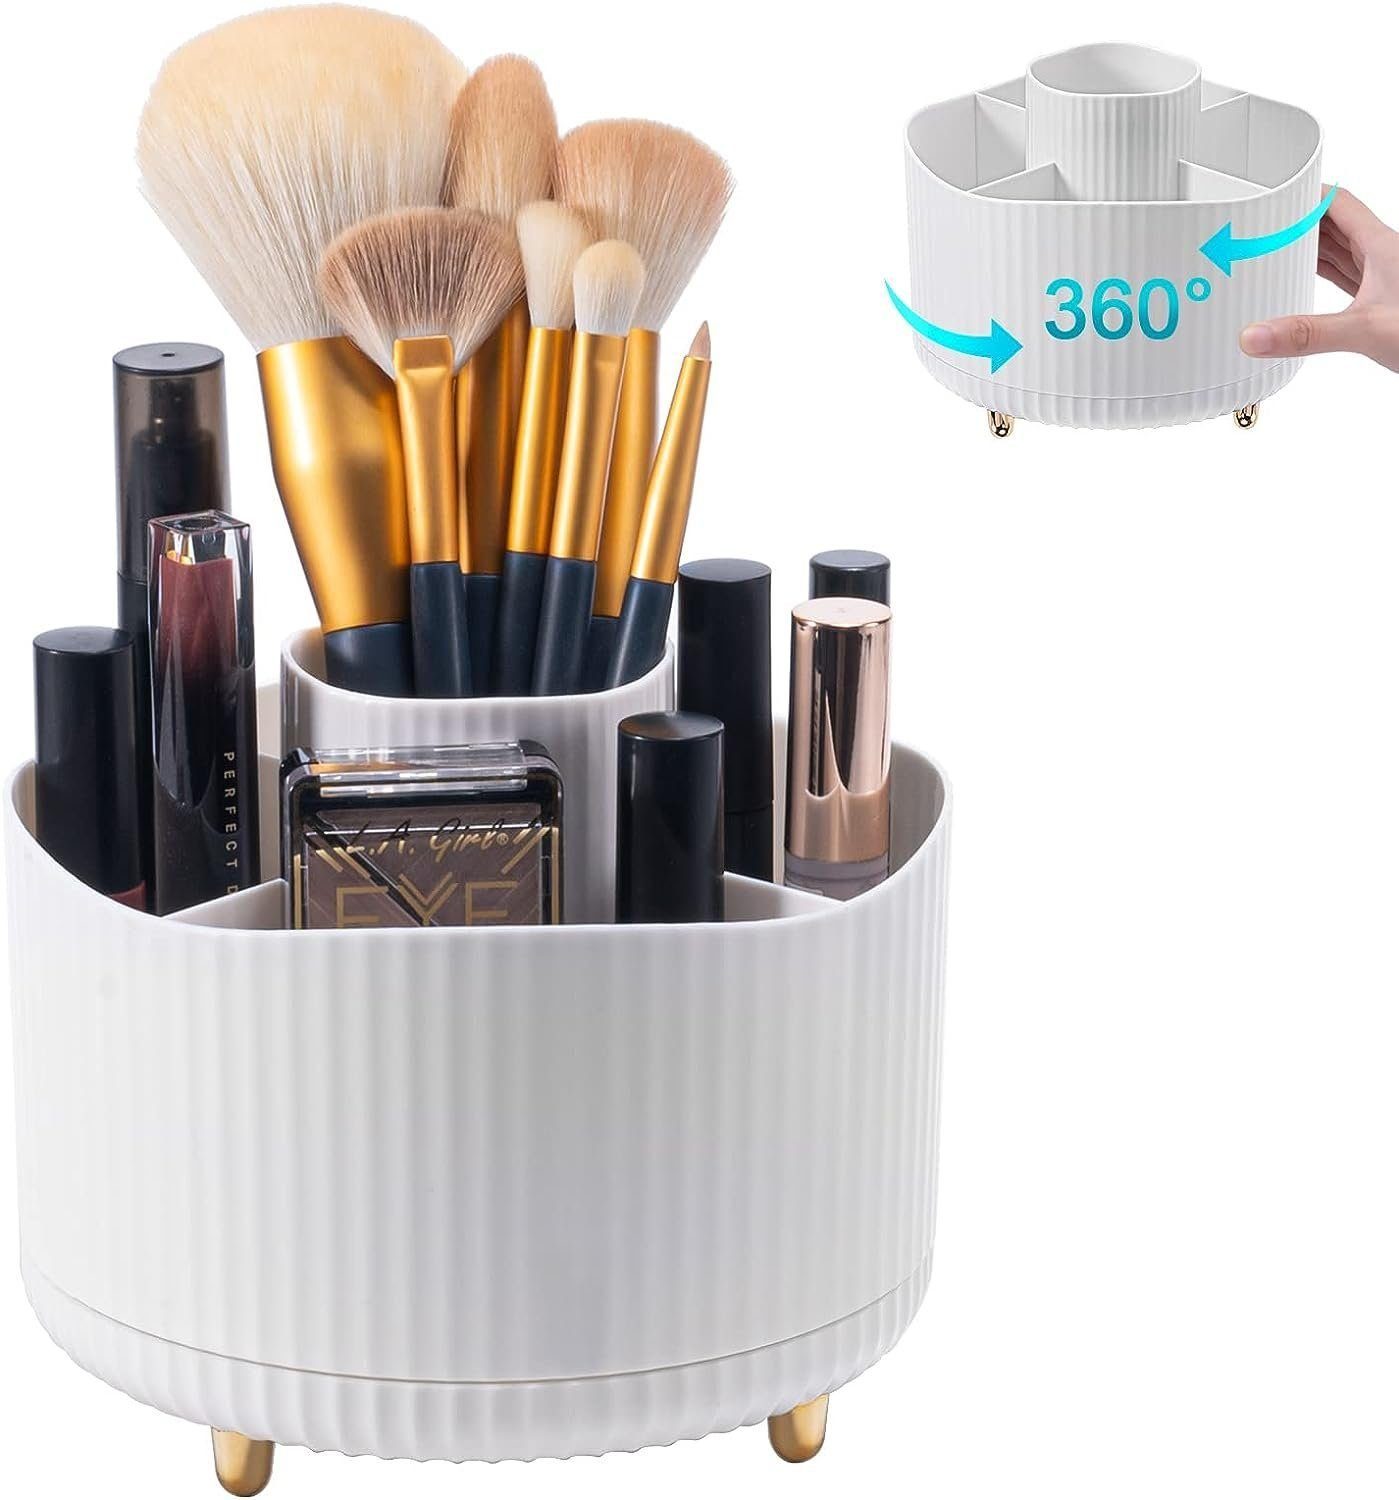 Bad DOPWii für Kosmetik Organizer Frisiertisch Make-Up Organizer,360°Drehbarer Kosmetikbox